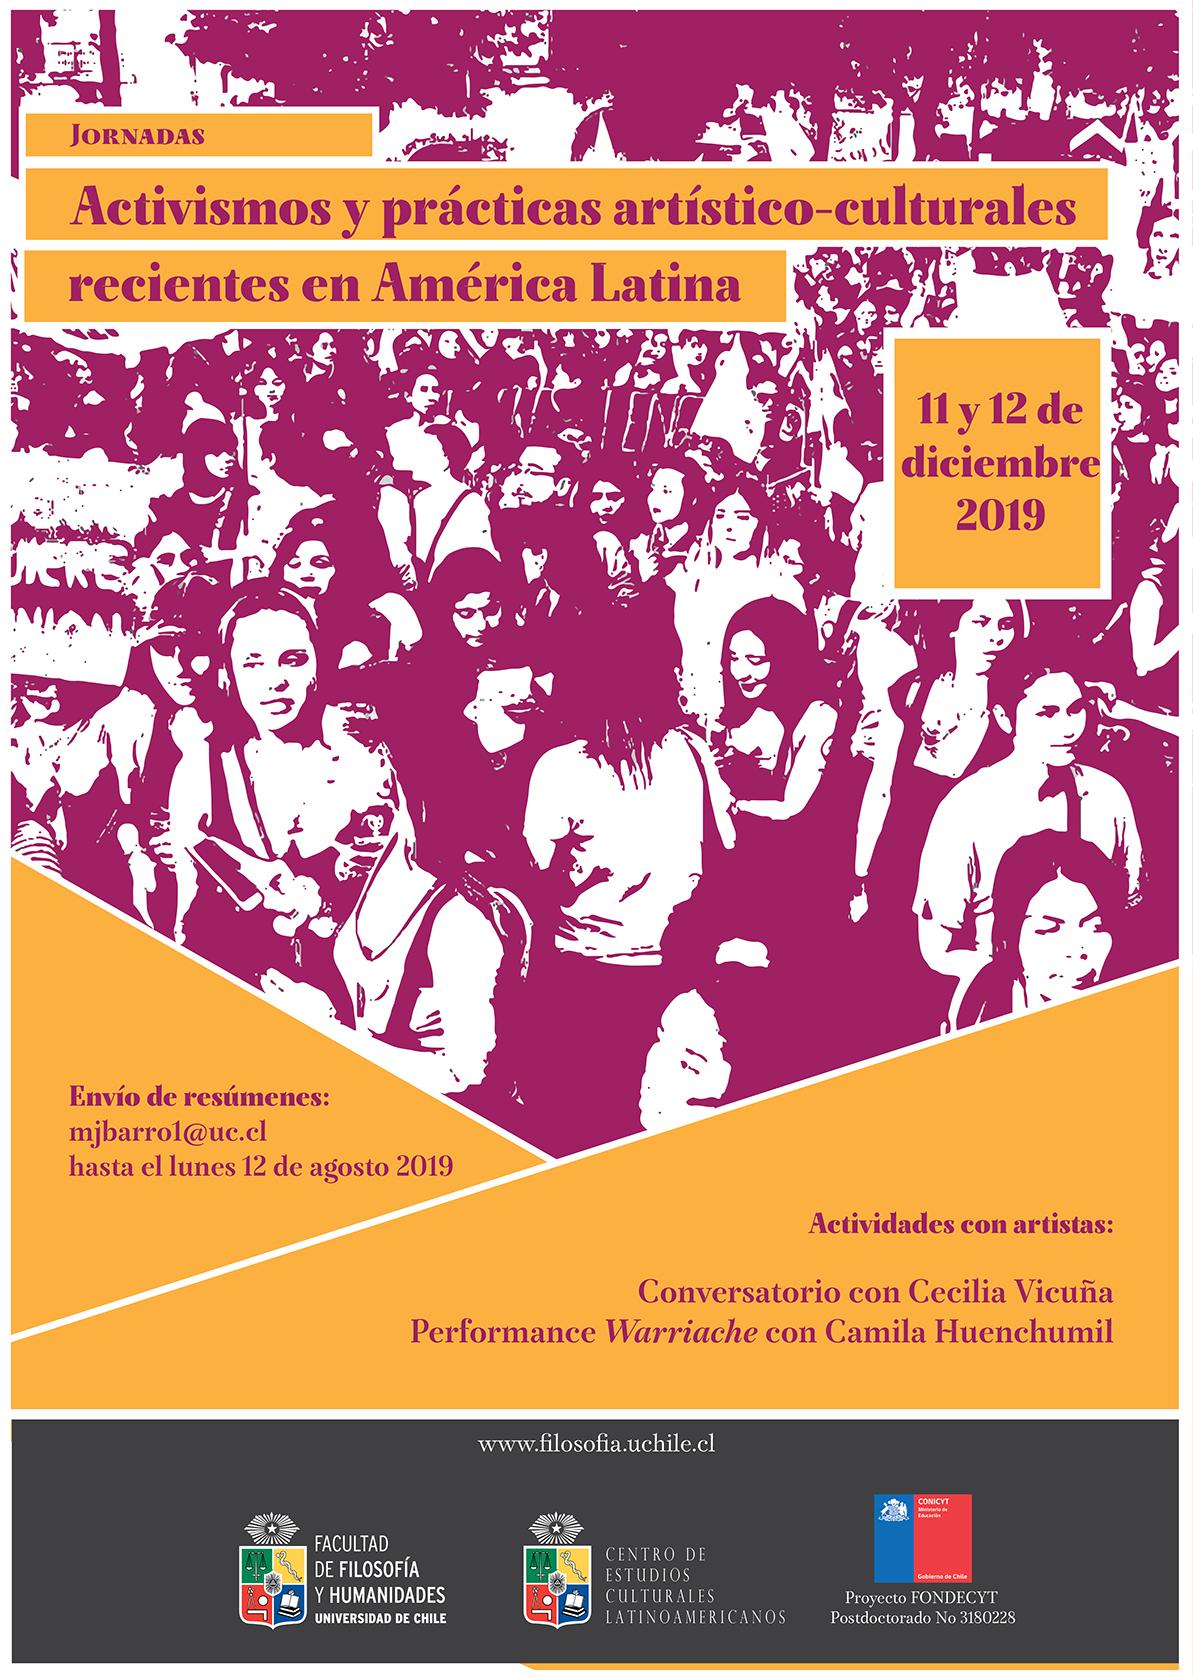 Jornadas "Activismos y prácticas artístico-culturales recientes en América Latina"